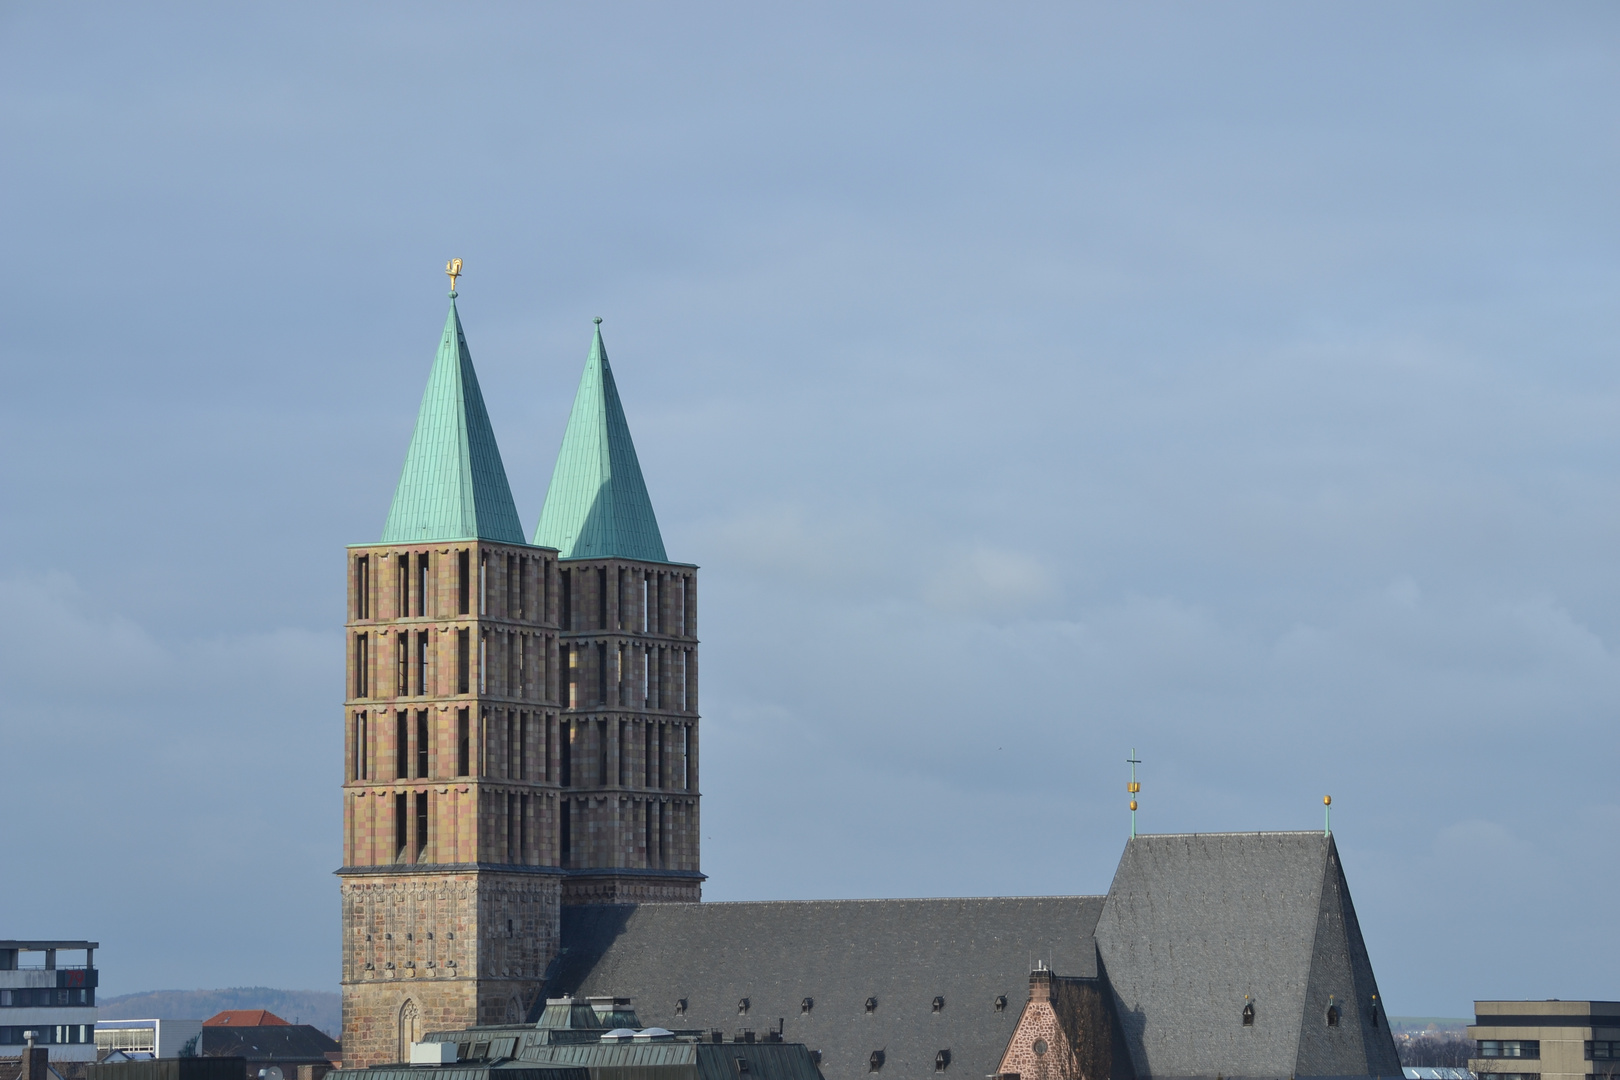 Die Martinskirche von Kassel